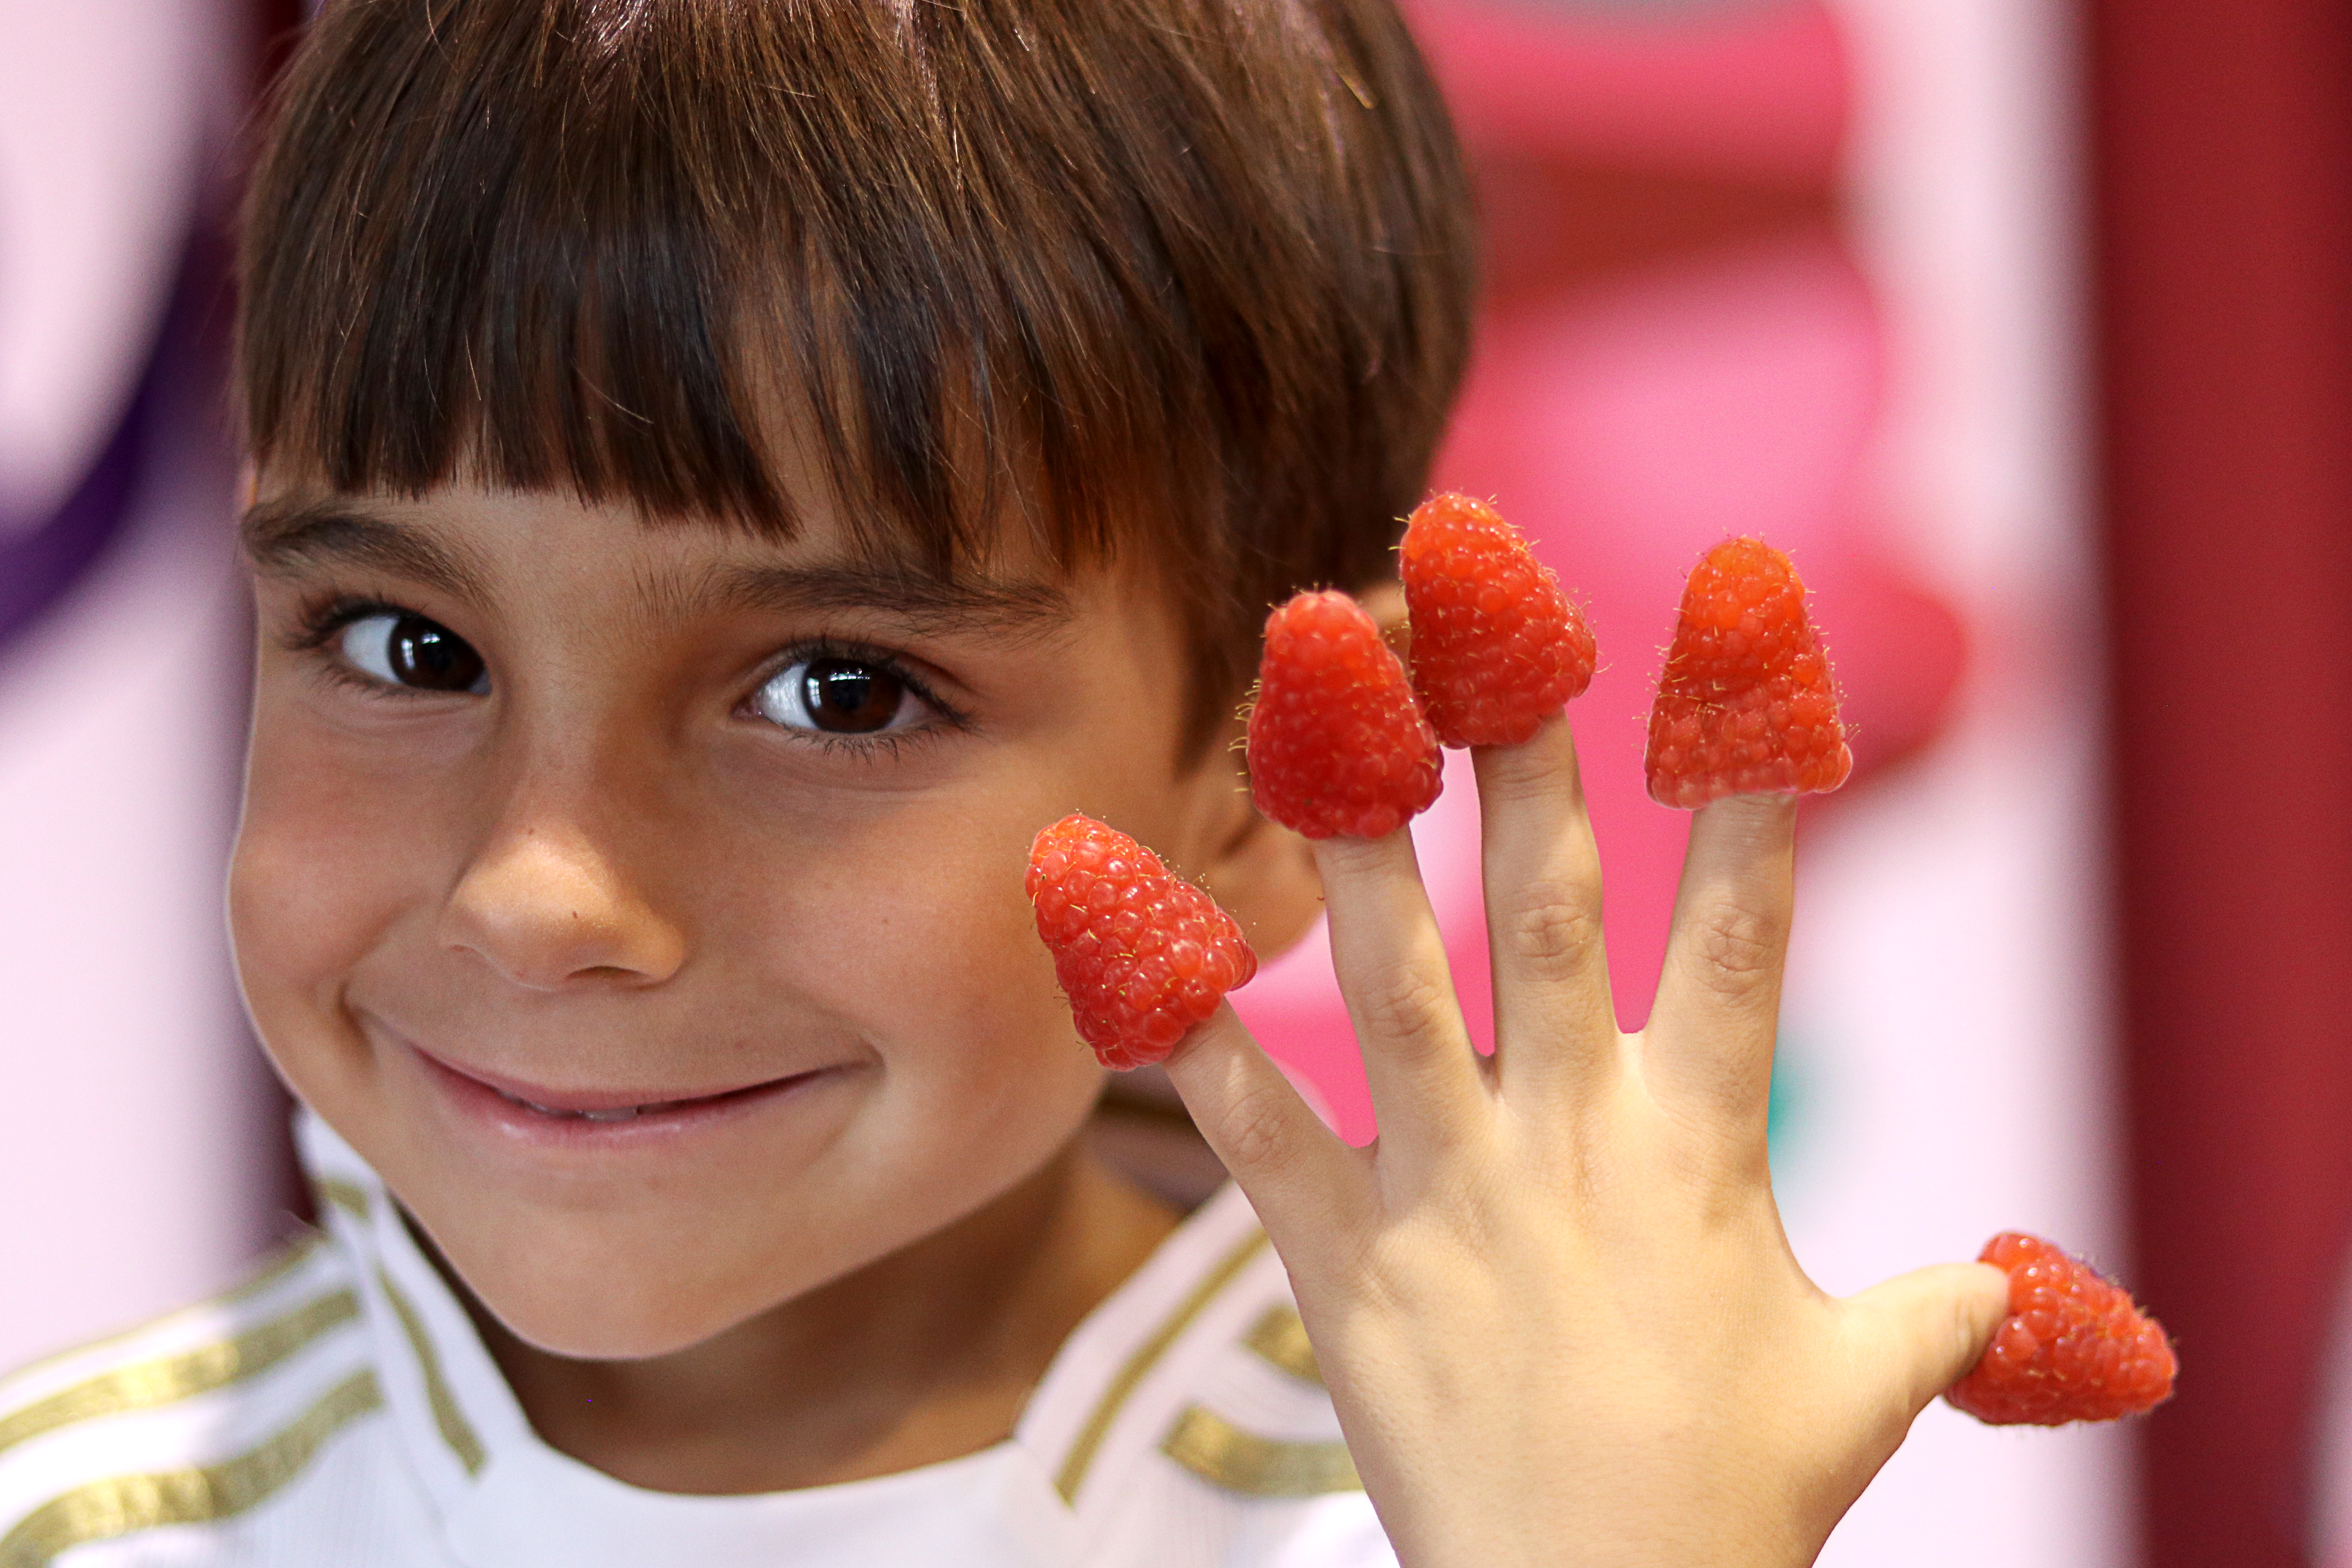 Un año más difundiendo los efectos beneficiosos de las berries en la salud